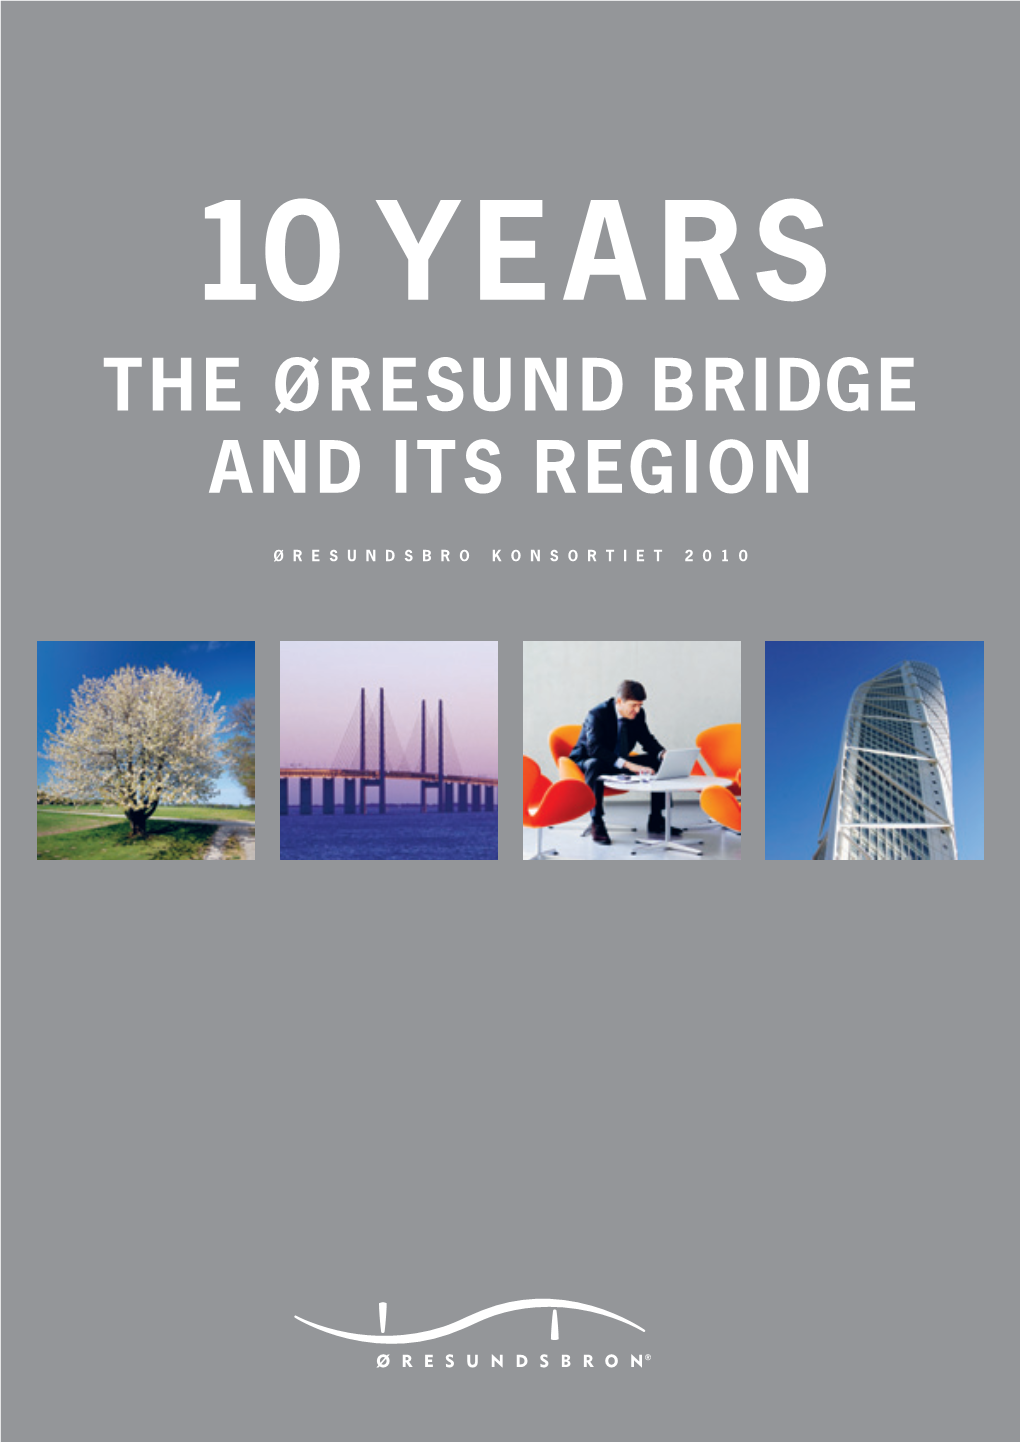 The Øresund Bridge and Its Region